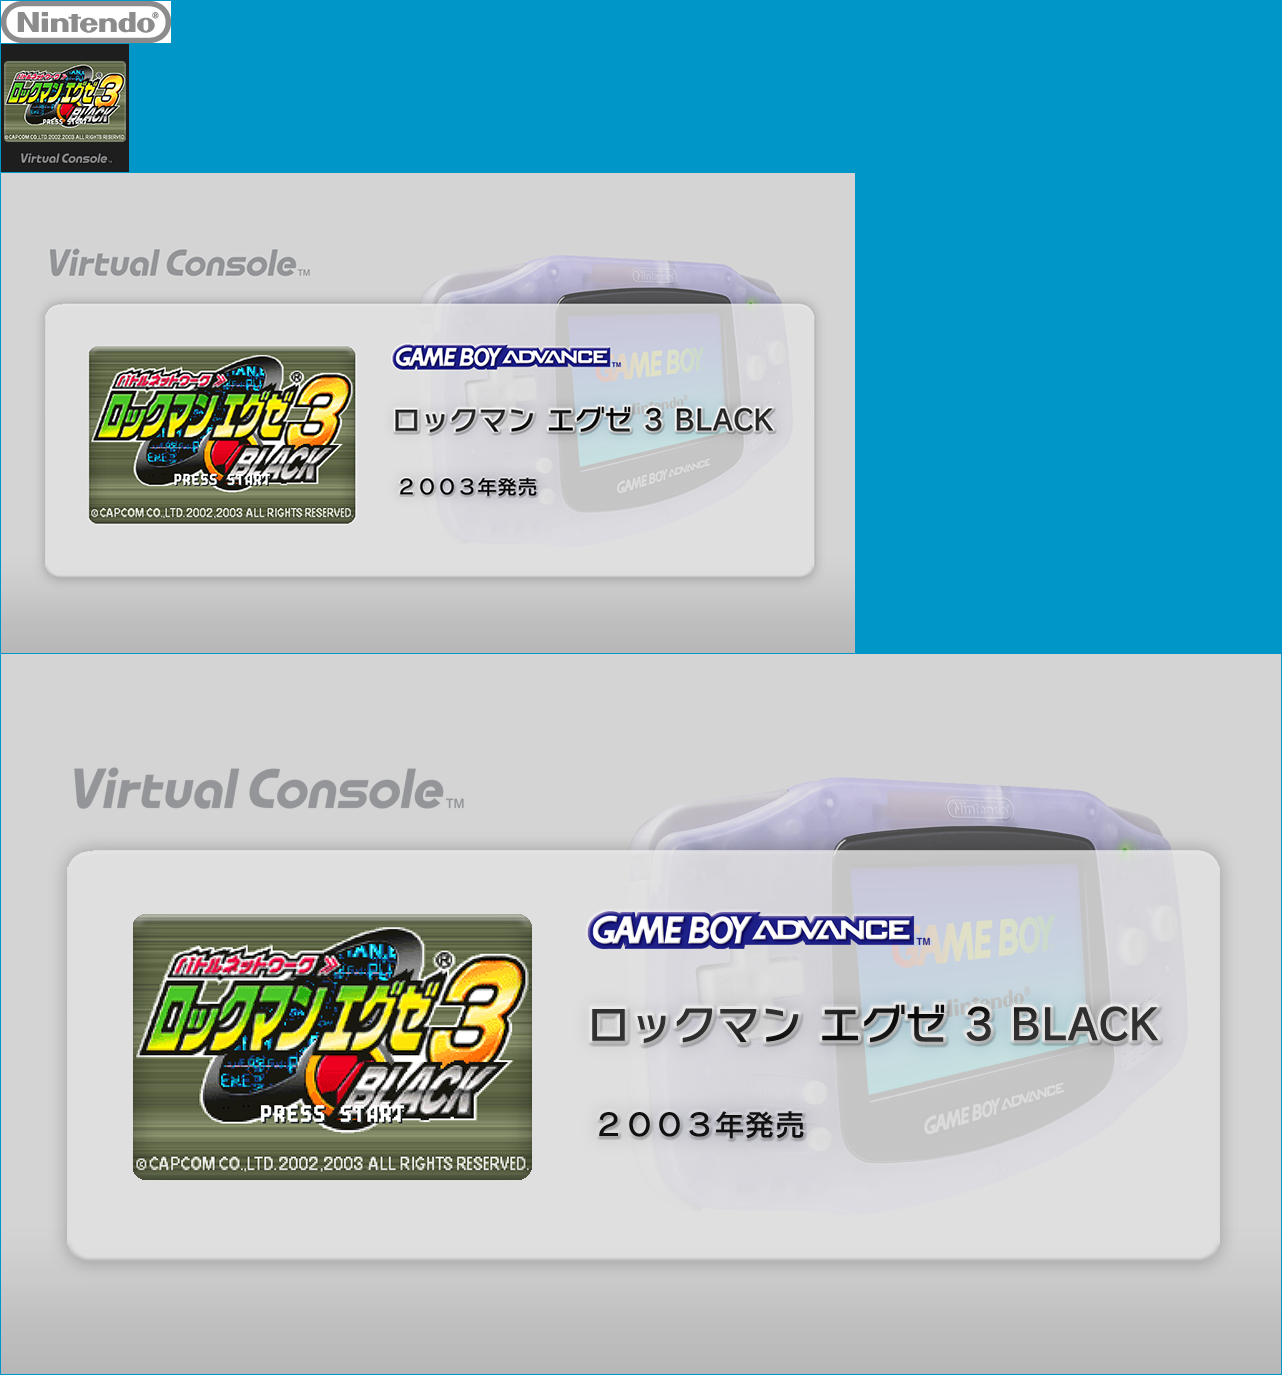 Virtual Console - Rockman EXE 3 BLACK